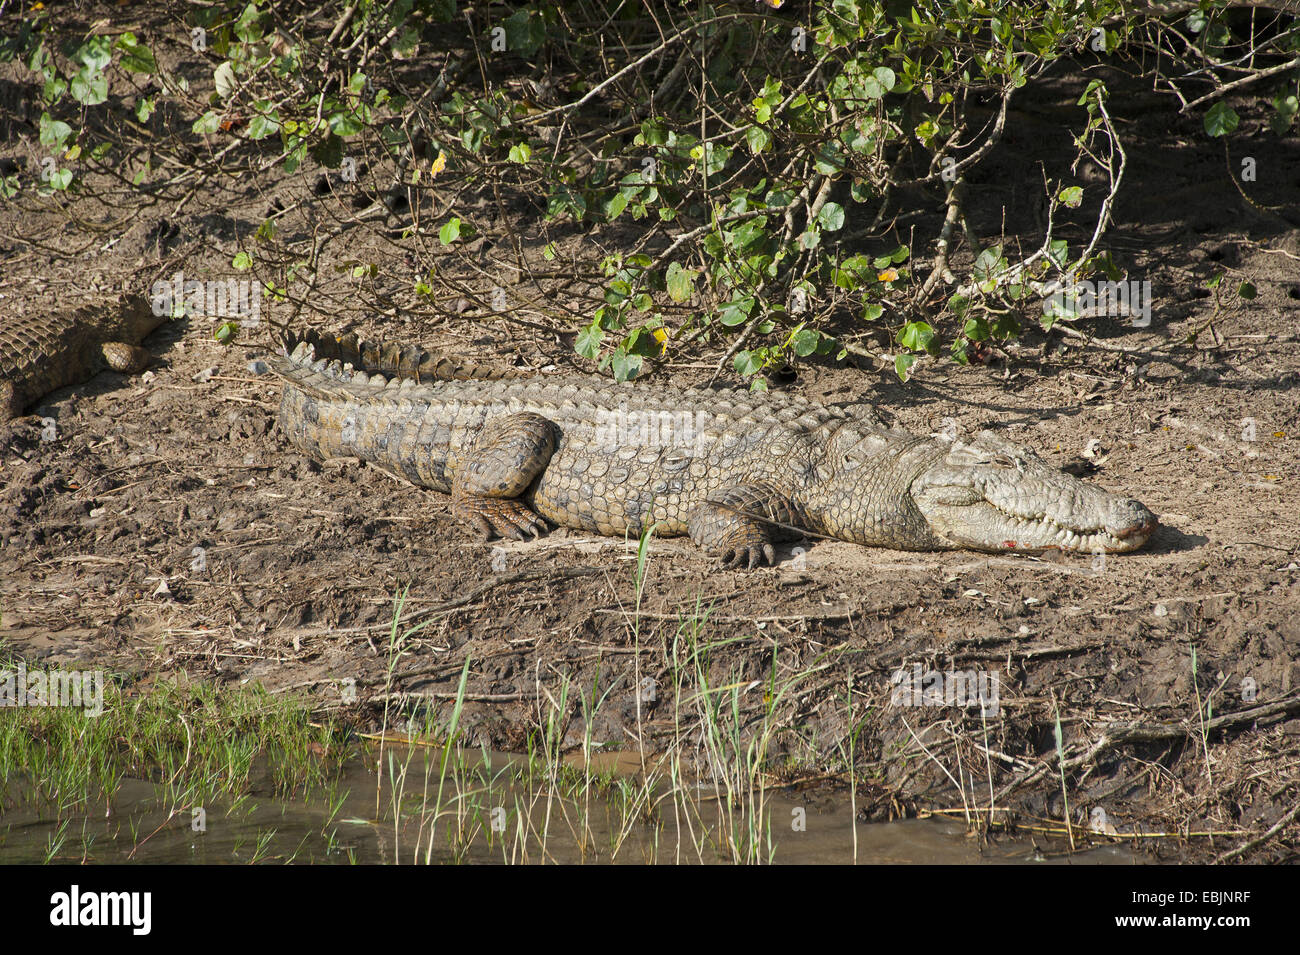 Nile crocodile (Crocodylus niloticus), lying on the riverbank, South Africa, Hluhluwe-Umfolozi National Park Stock Photo